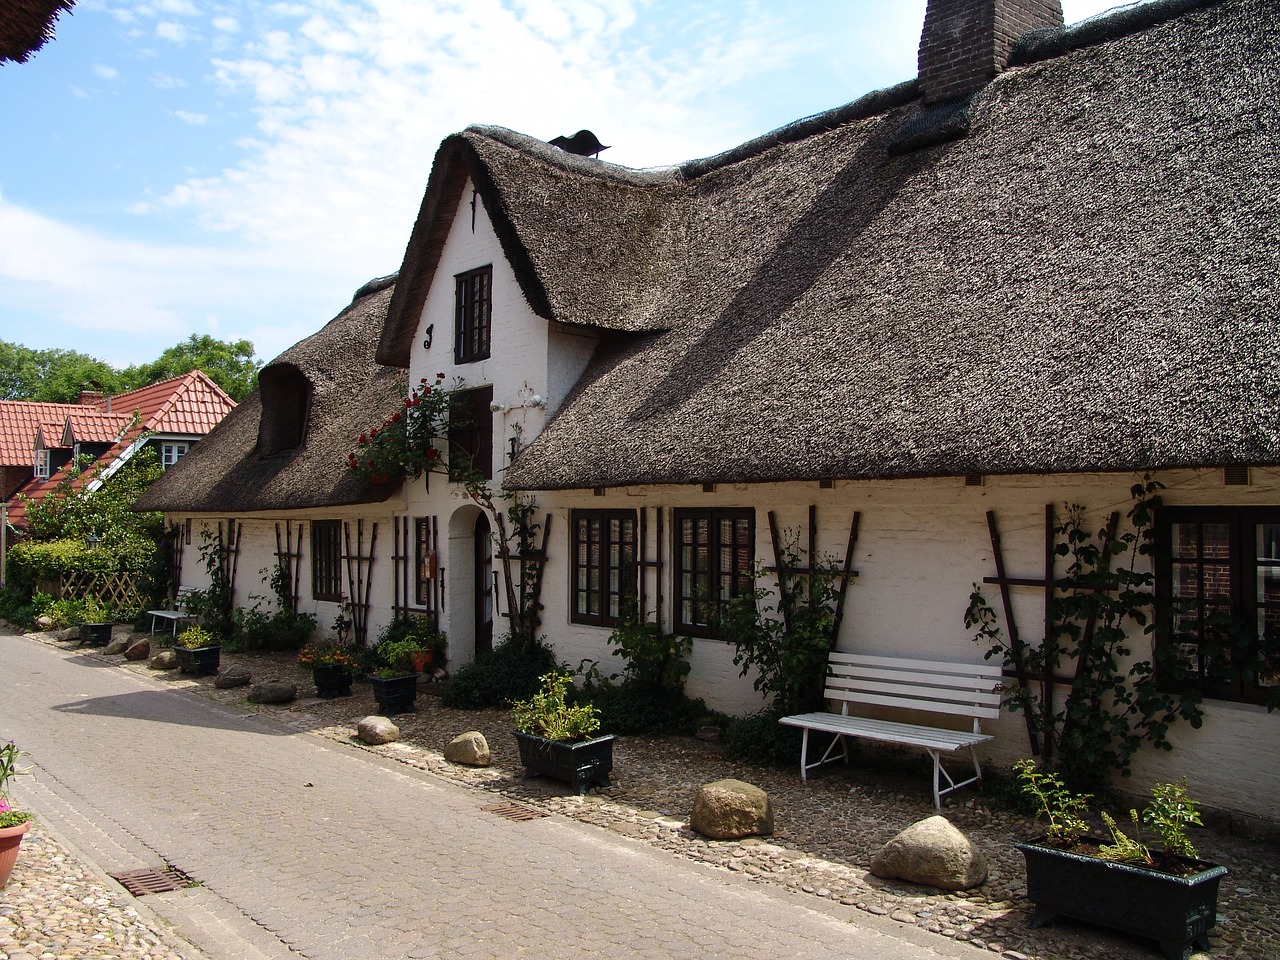 Соломенные крыши просторных навесов окружающих двор. Соломенная крыша. Средневековый дом с соломенной крышей. Соломенные крыши в Германии. Дом с соломенной крышей в Голландии.